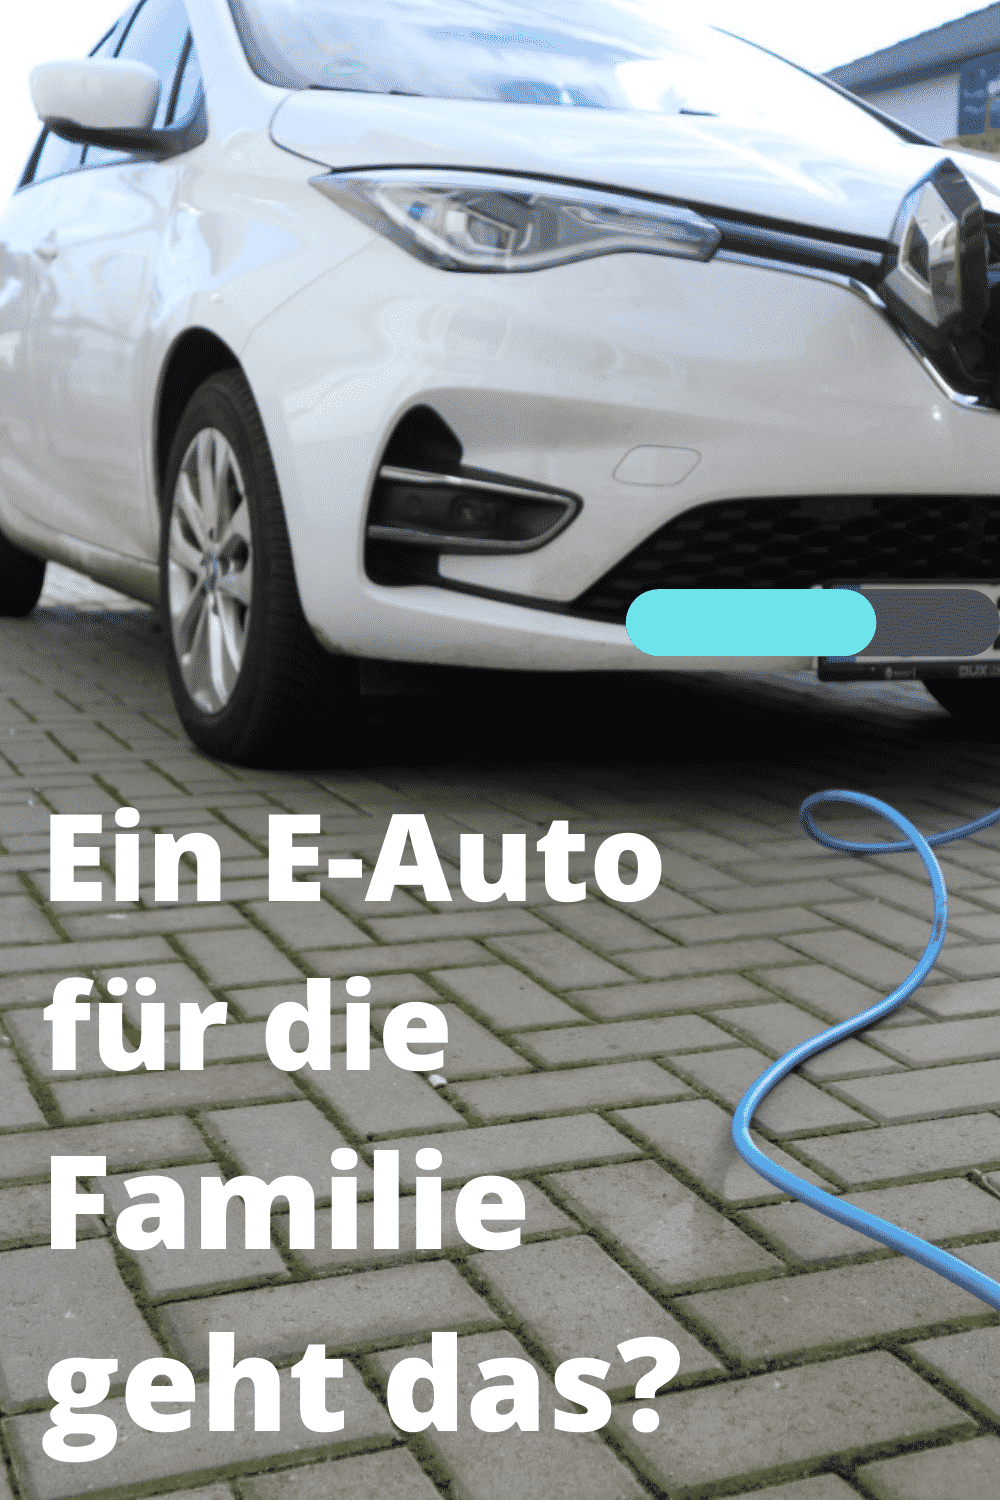 Ein Elektroauto fuer eine Familie